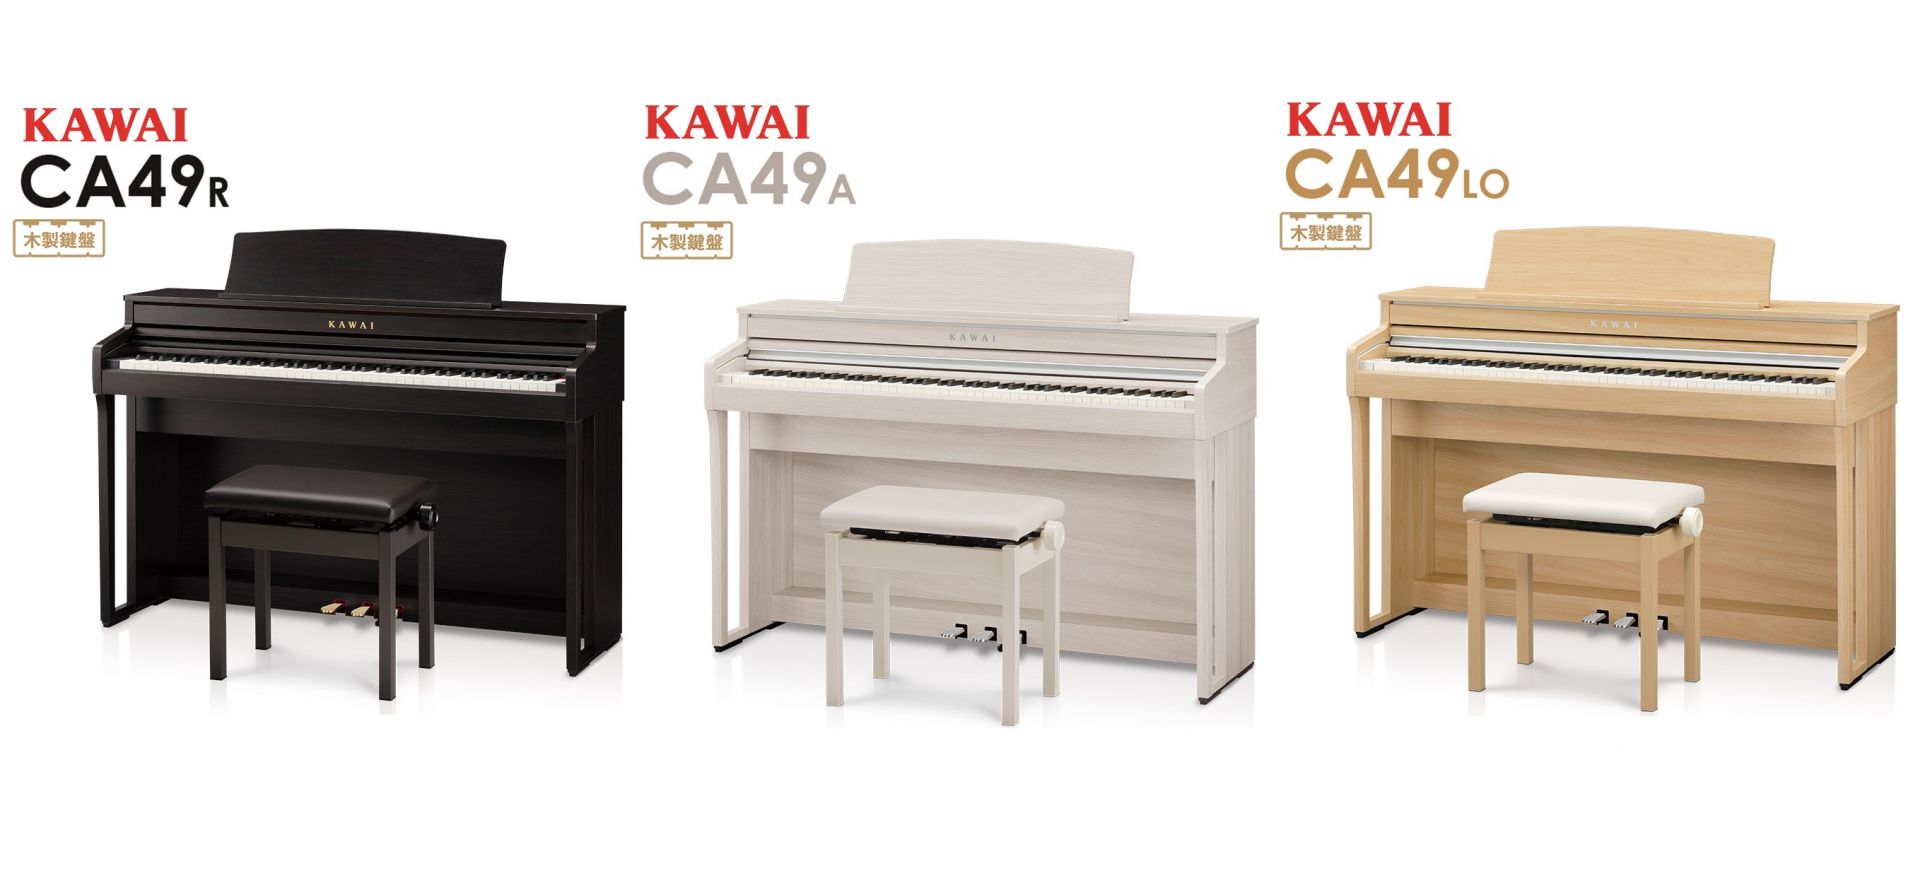 カワイCA49R KAWAI 電子ピアノ 木製鍵盤-